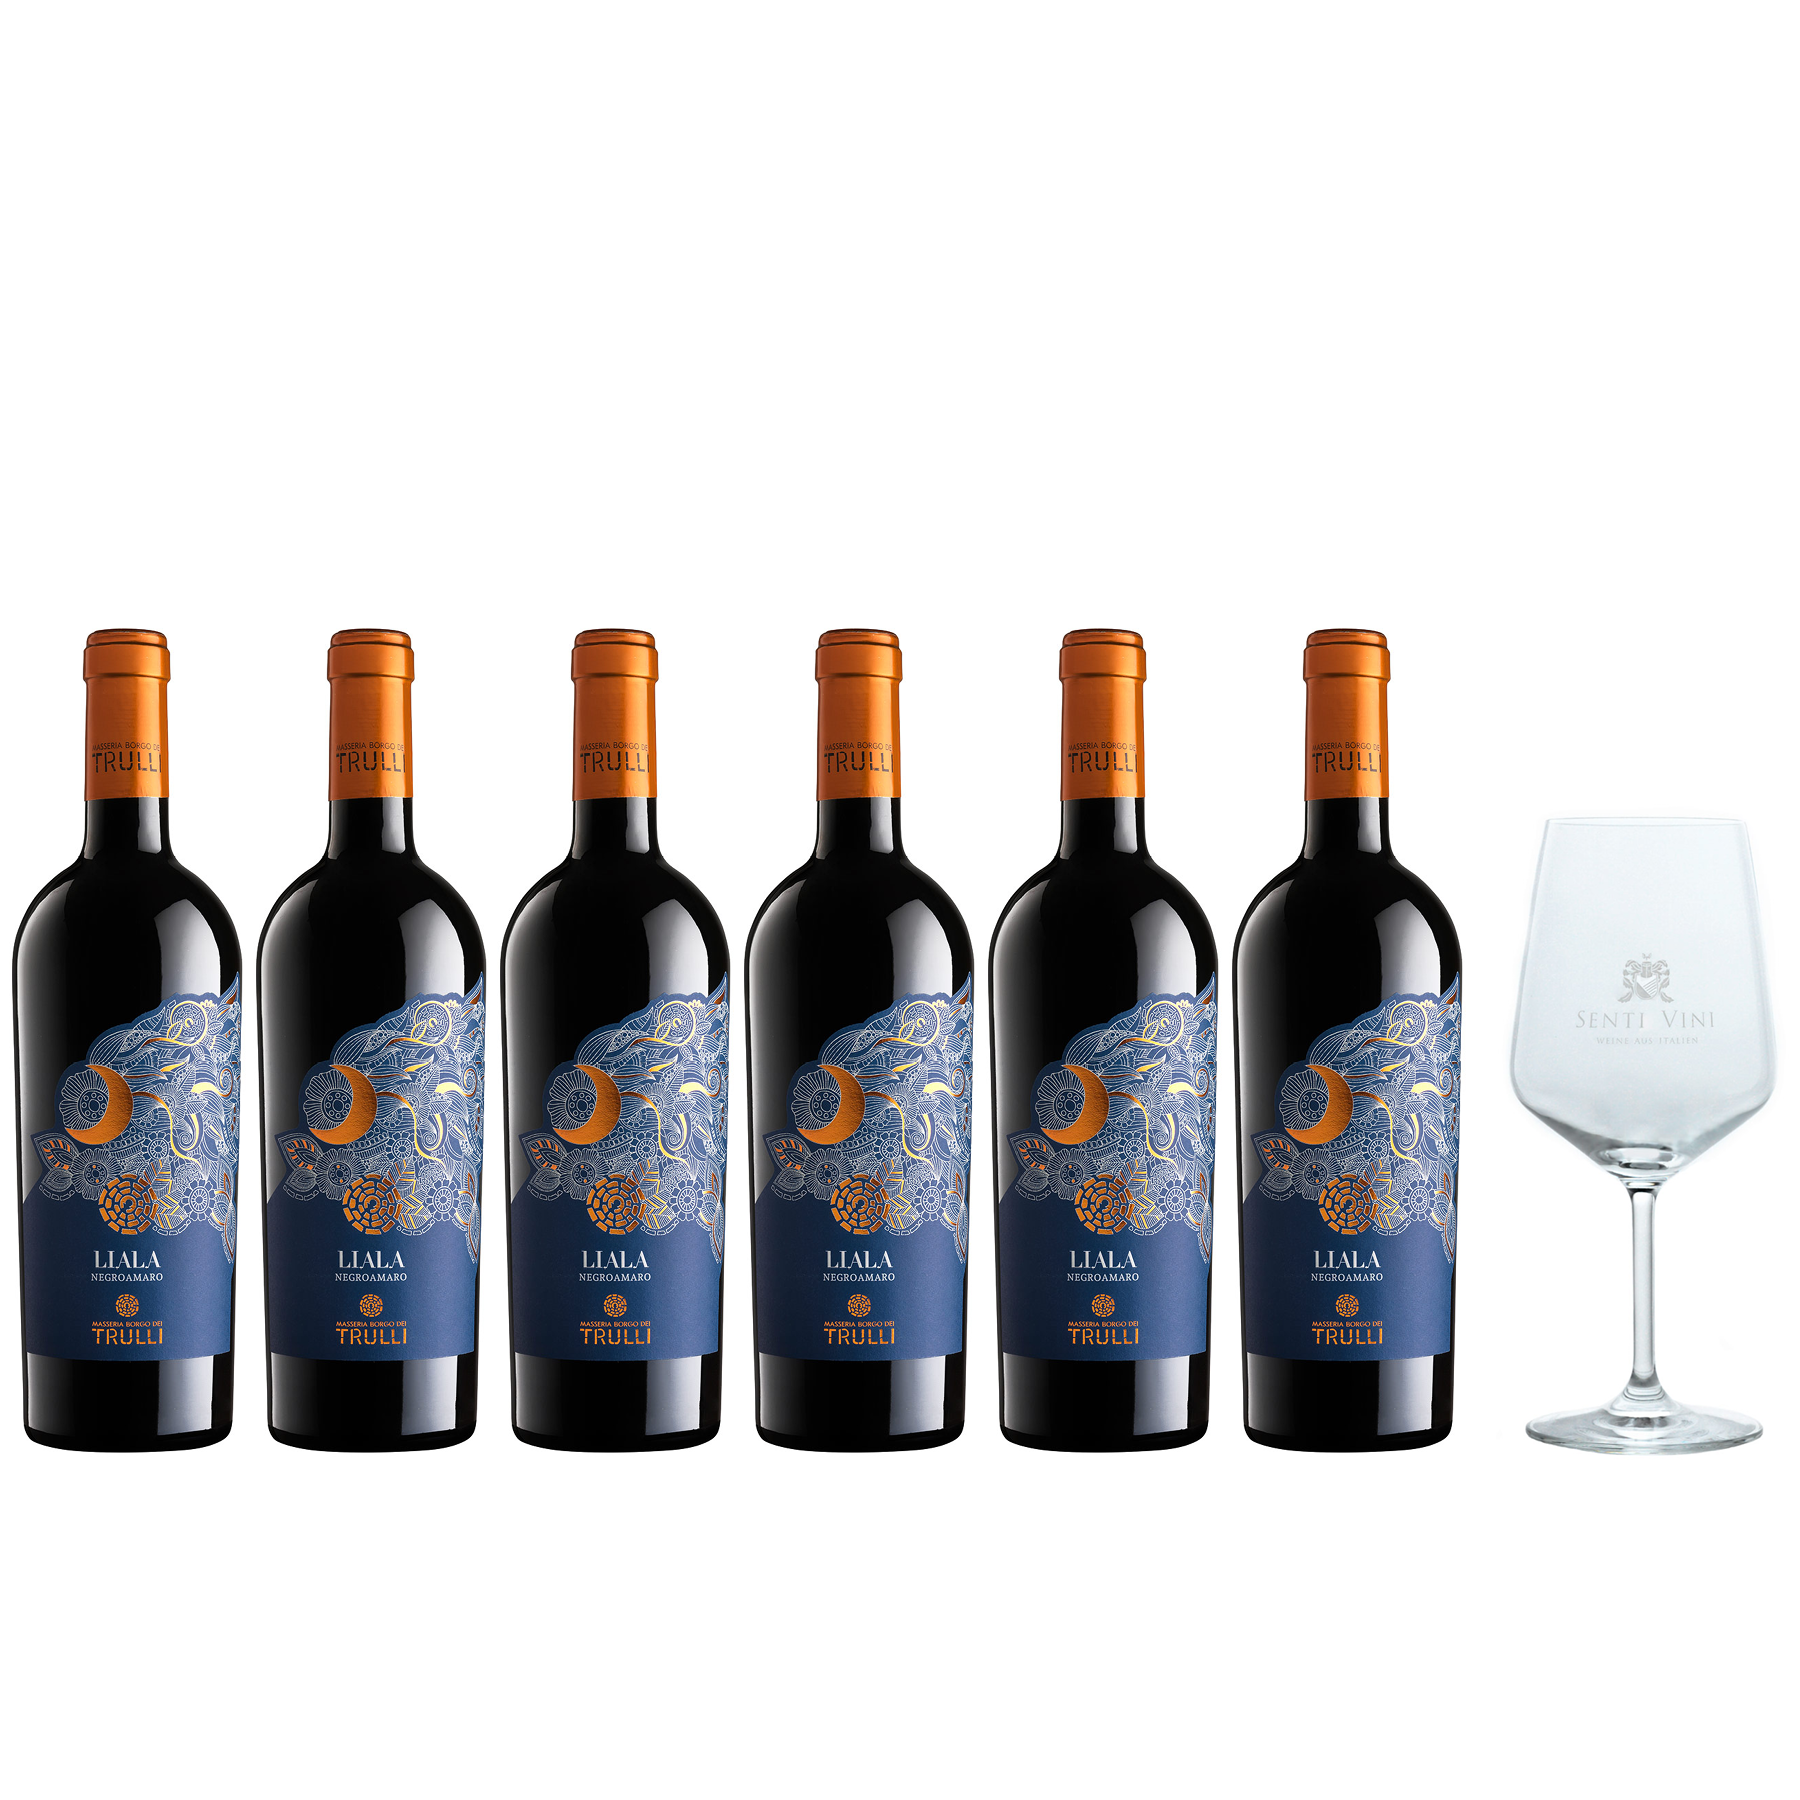 Sparpaket Masseria Borgo dei Trulli Liala Negroamaro Salento IGP 2021 (6 x  0,75l) mit Spiegelau Senti Vini Weinglas | Online kaufen bei Senti Vini -  Weine aus Italien